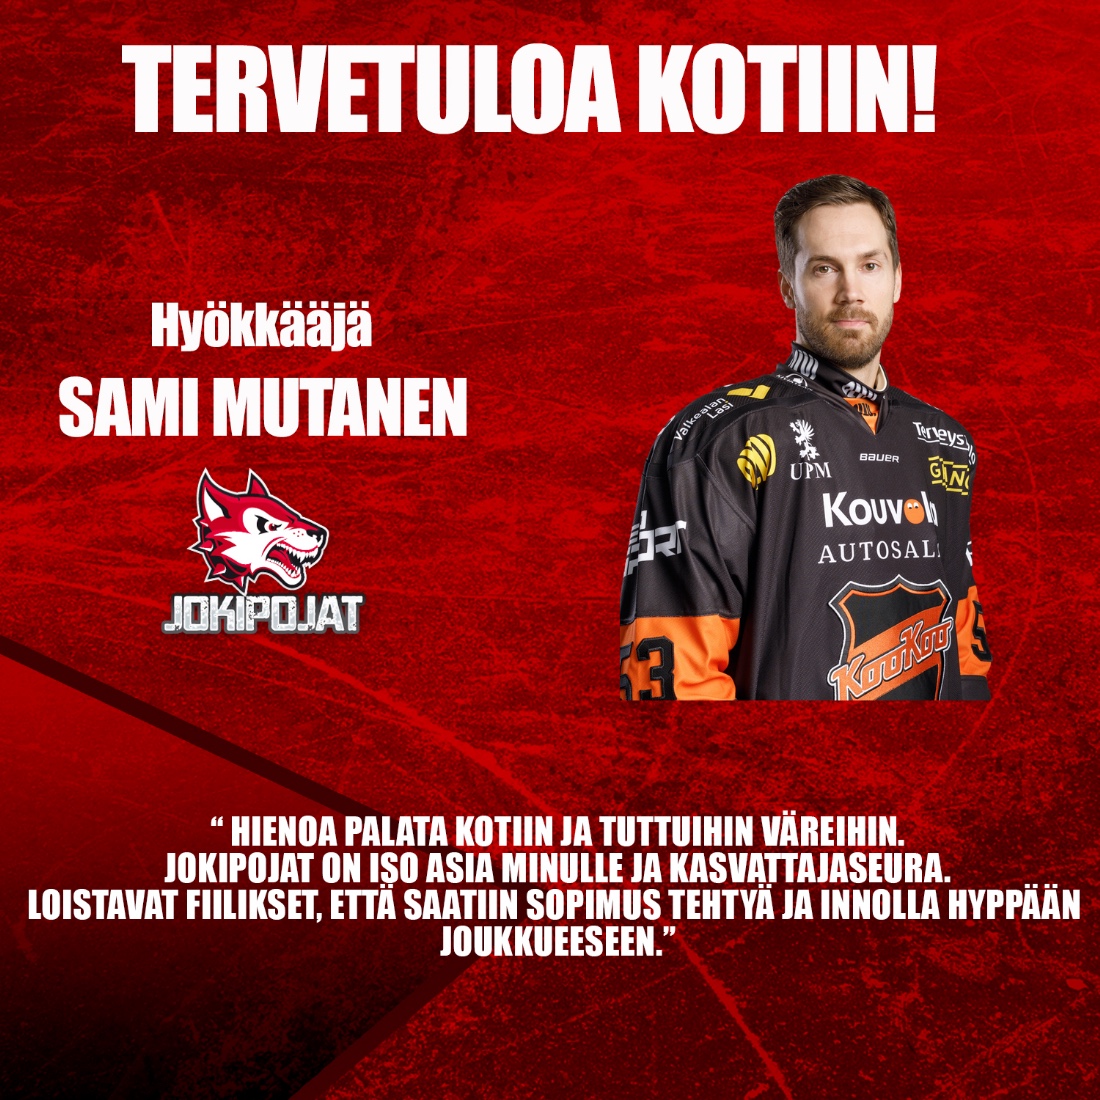 Tervetuloa kotiin, Sami Mutanen!